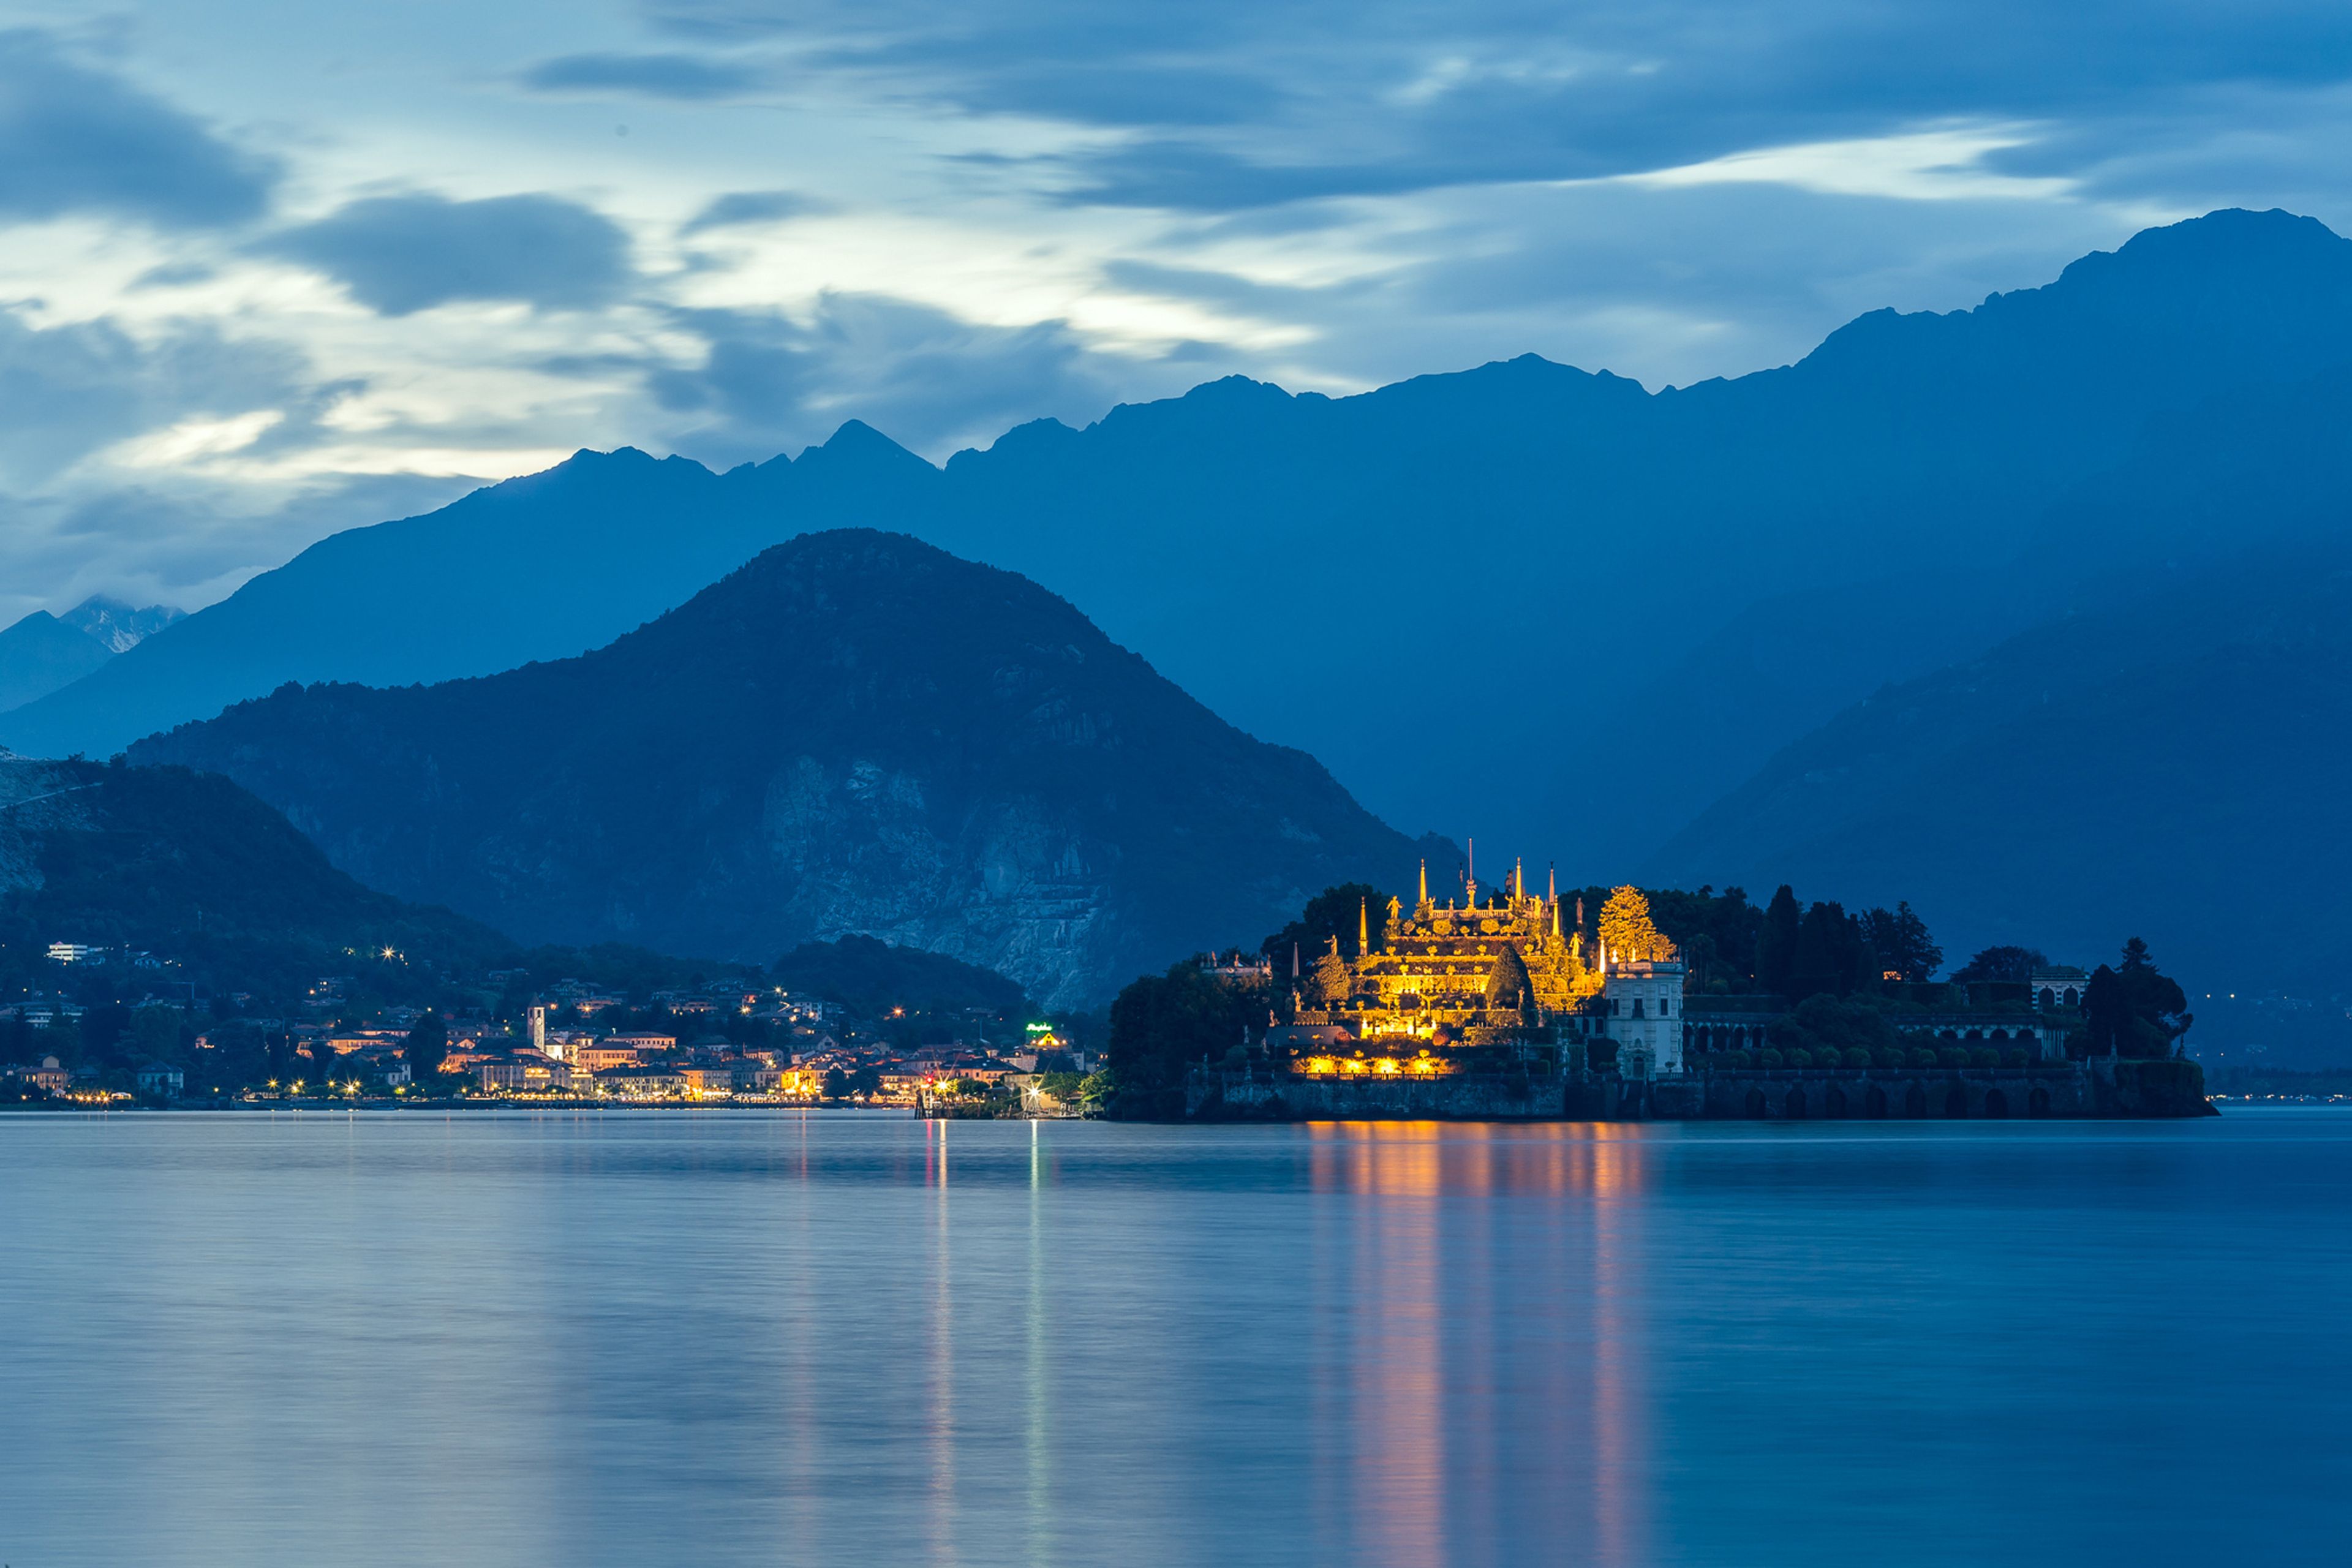 Isola Bella, Stresa sulle rive del Lago Maggiore nella provincia Verbano-Cusio-Ossola in Piemonte, nord Italia all’imbrunire